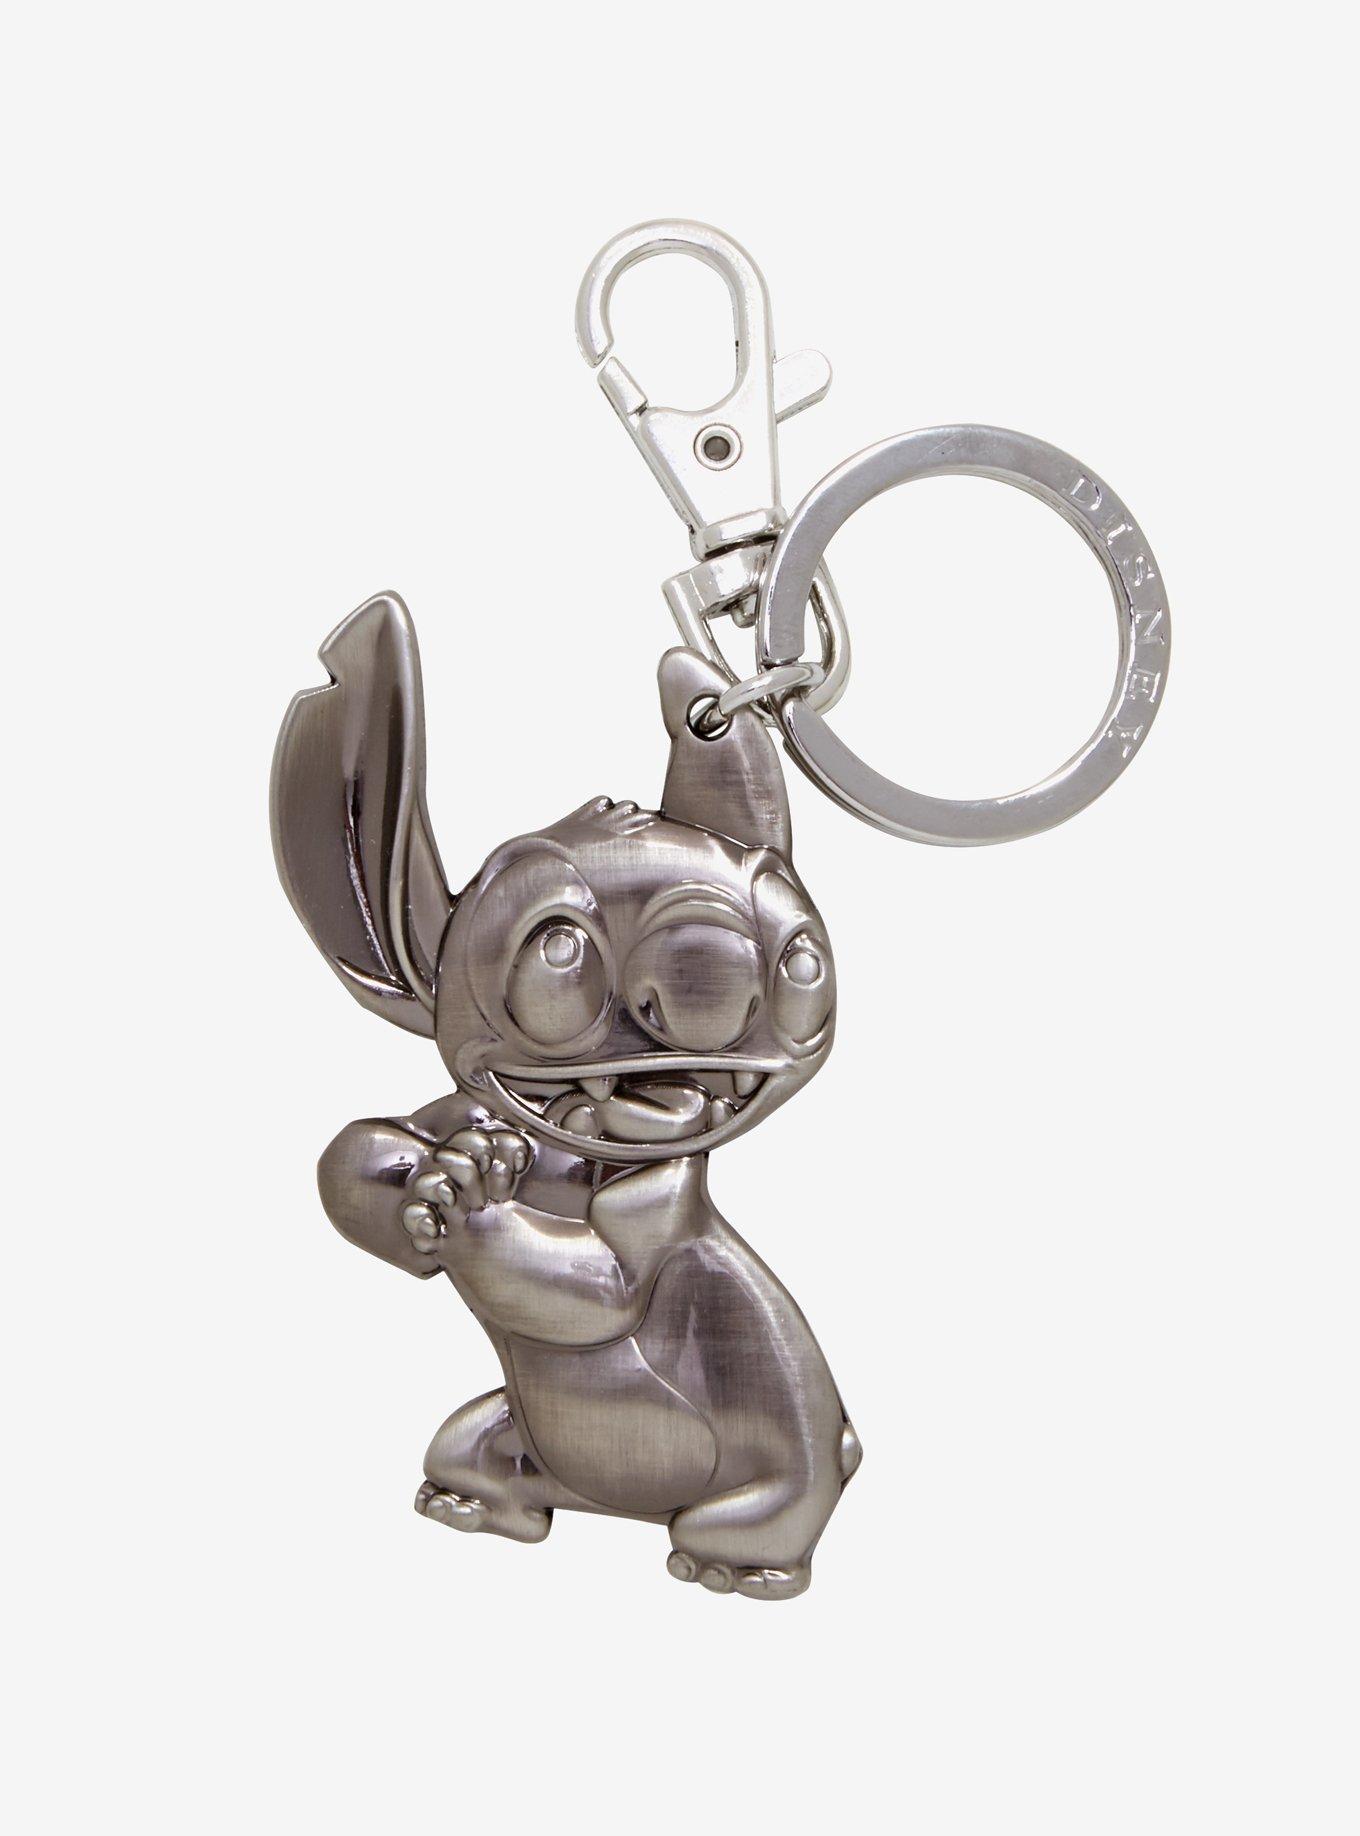 Disney Lilo & Stitch Pewter Stitch Key Chain